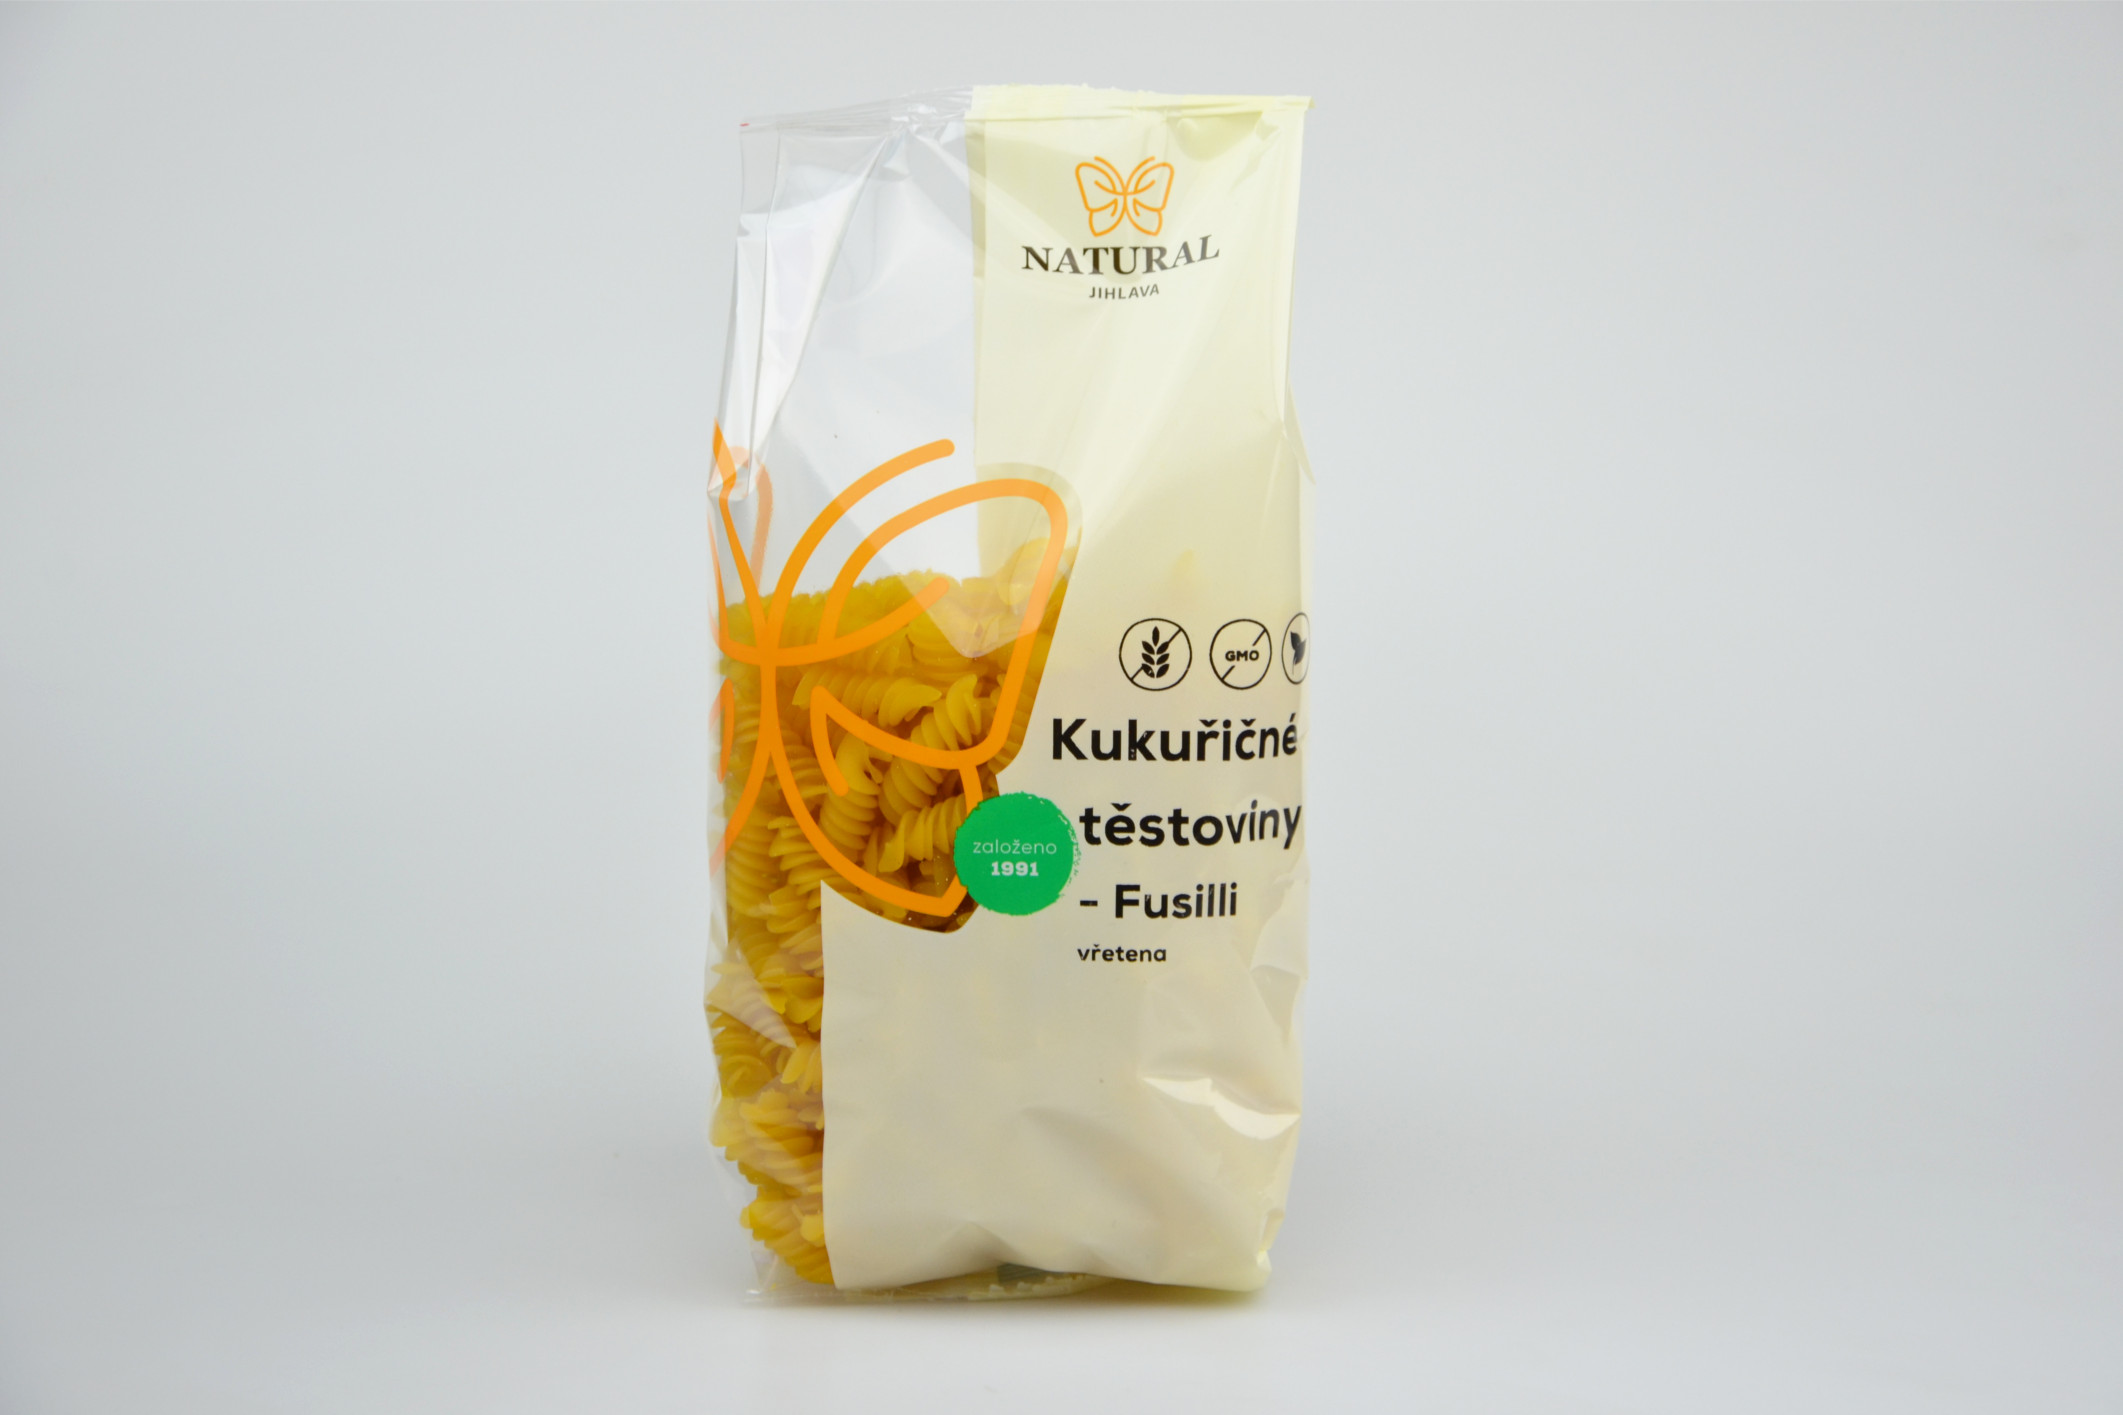 Kukuřičné těstoviny Fusilli (vřetena) NATURAL 300 g